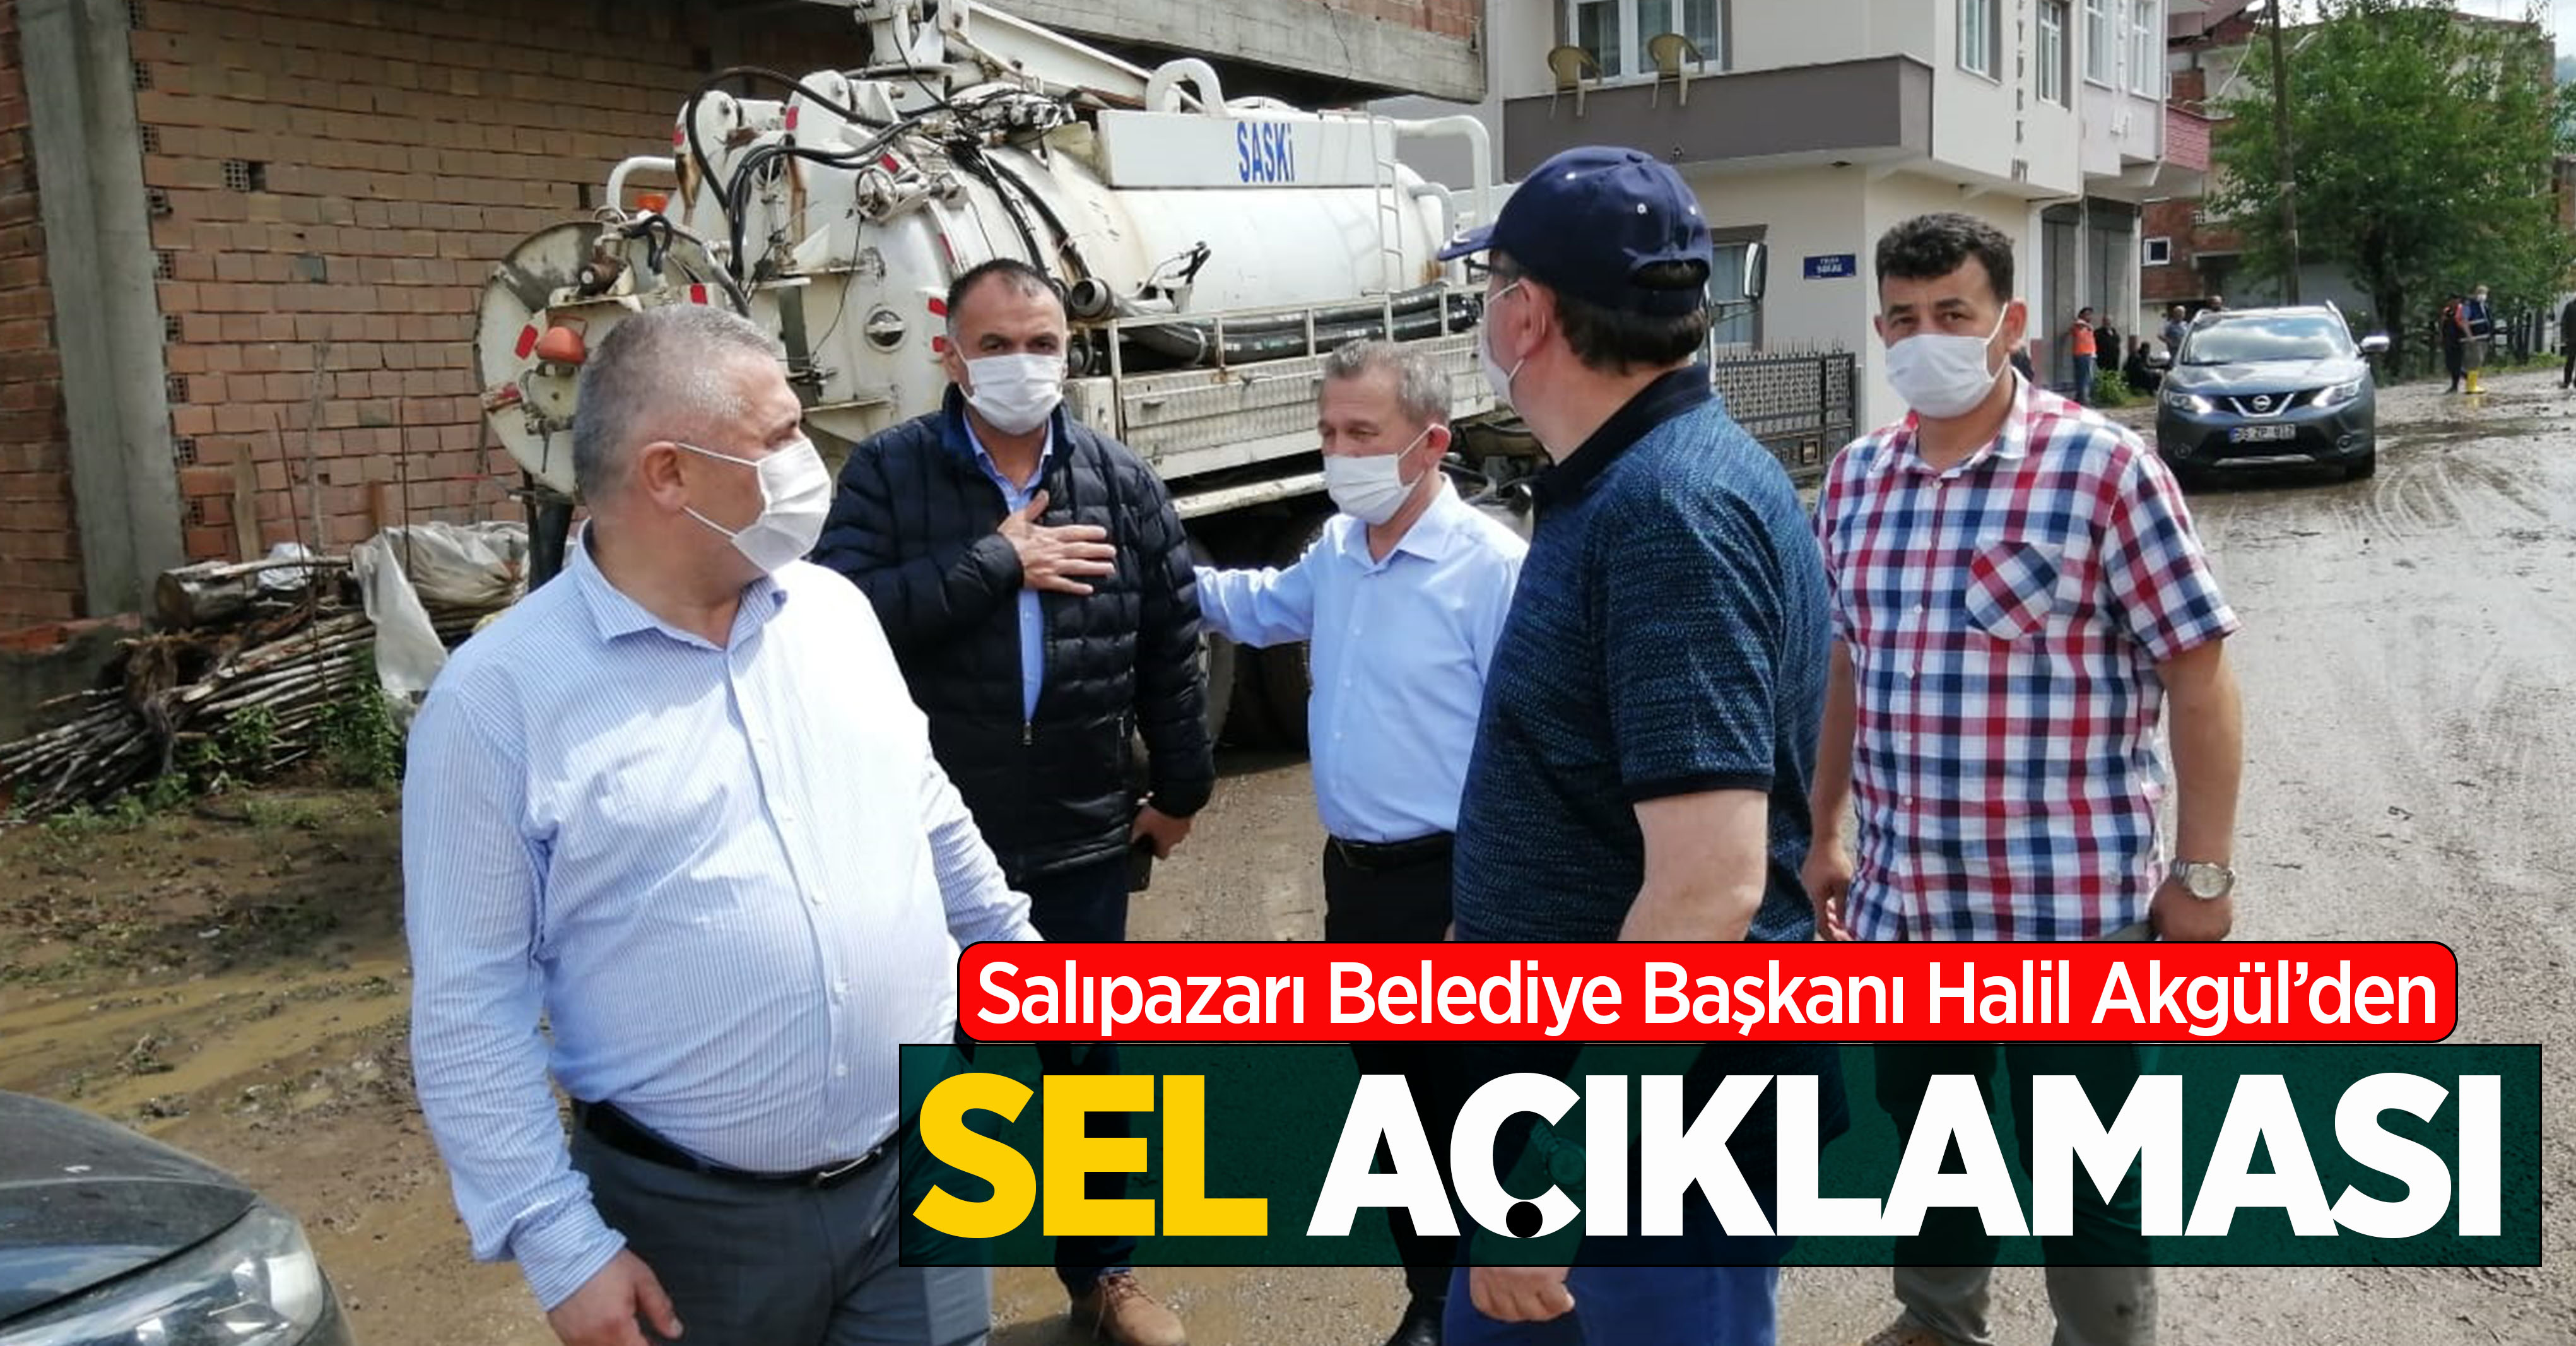 Salıpazarı Belediye Başkanı Halil Akgül'den sel açıklaması